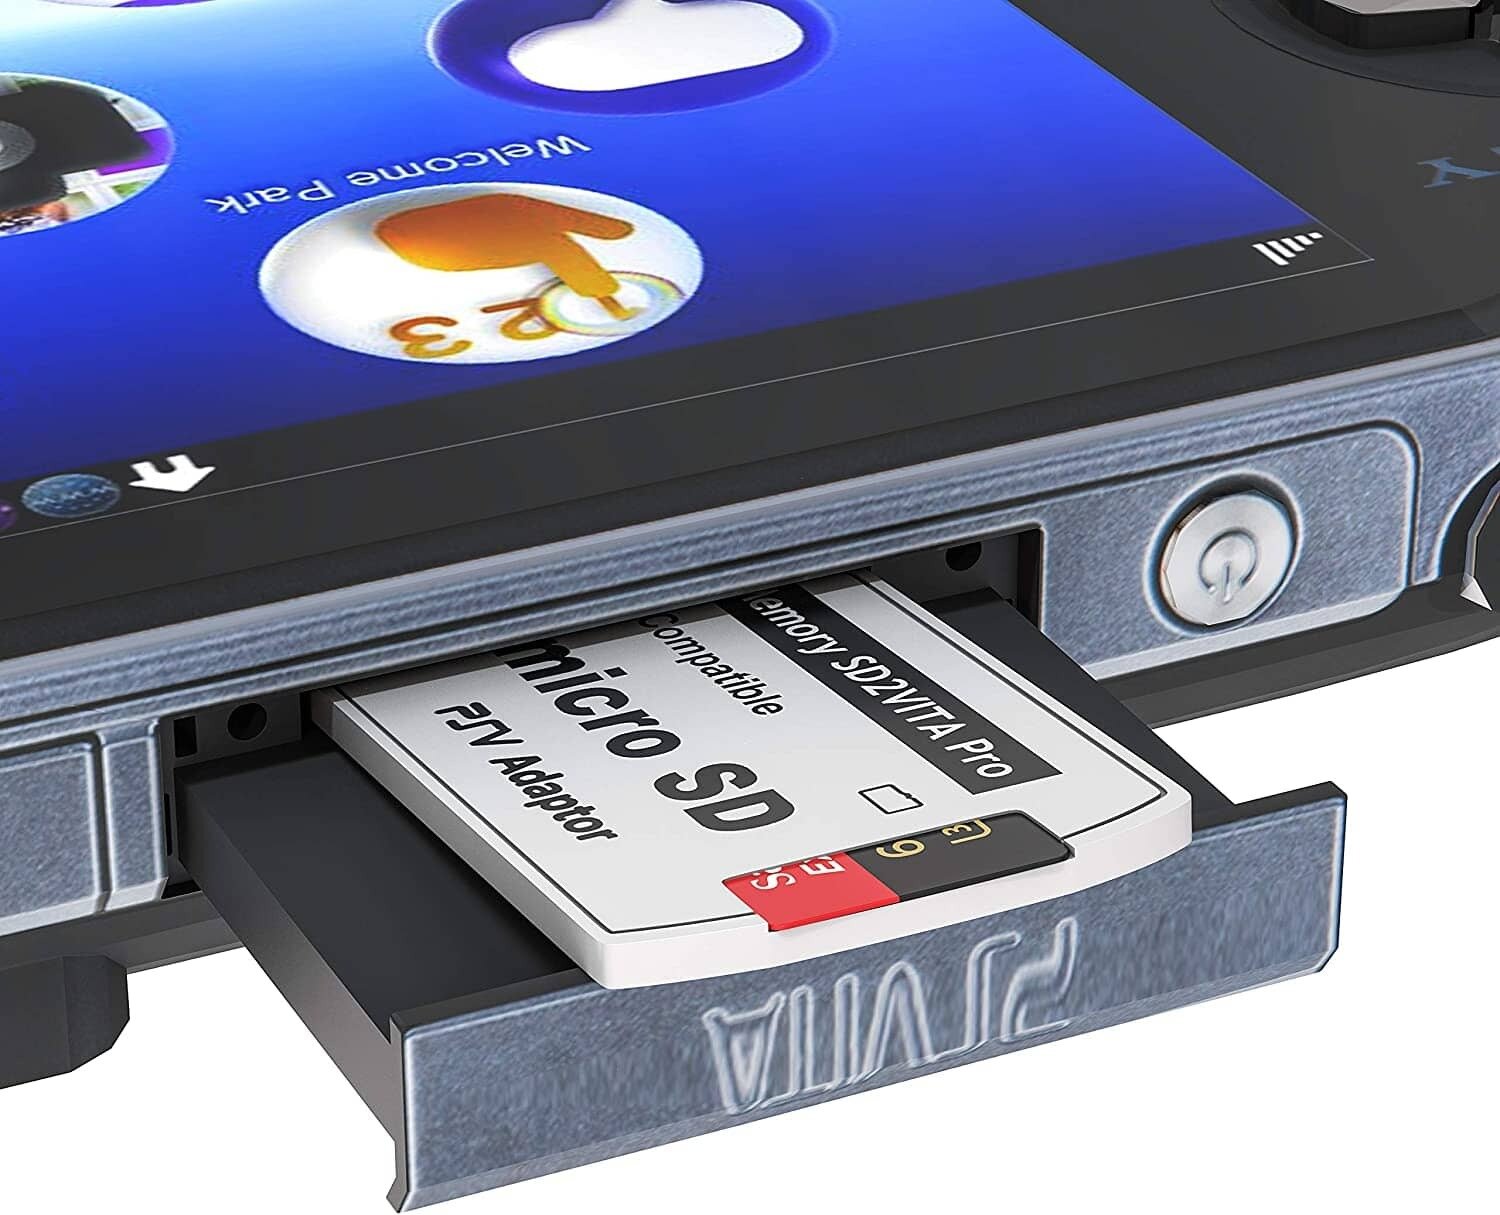 Адаптер для PS Vita Game Card Adapter Micro SD/TF Memory Card Версия SD2VITA Pro 50 Gen PSV 1000/2000